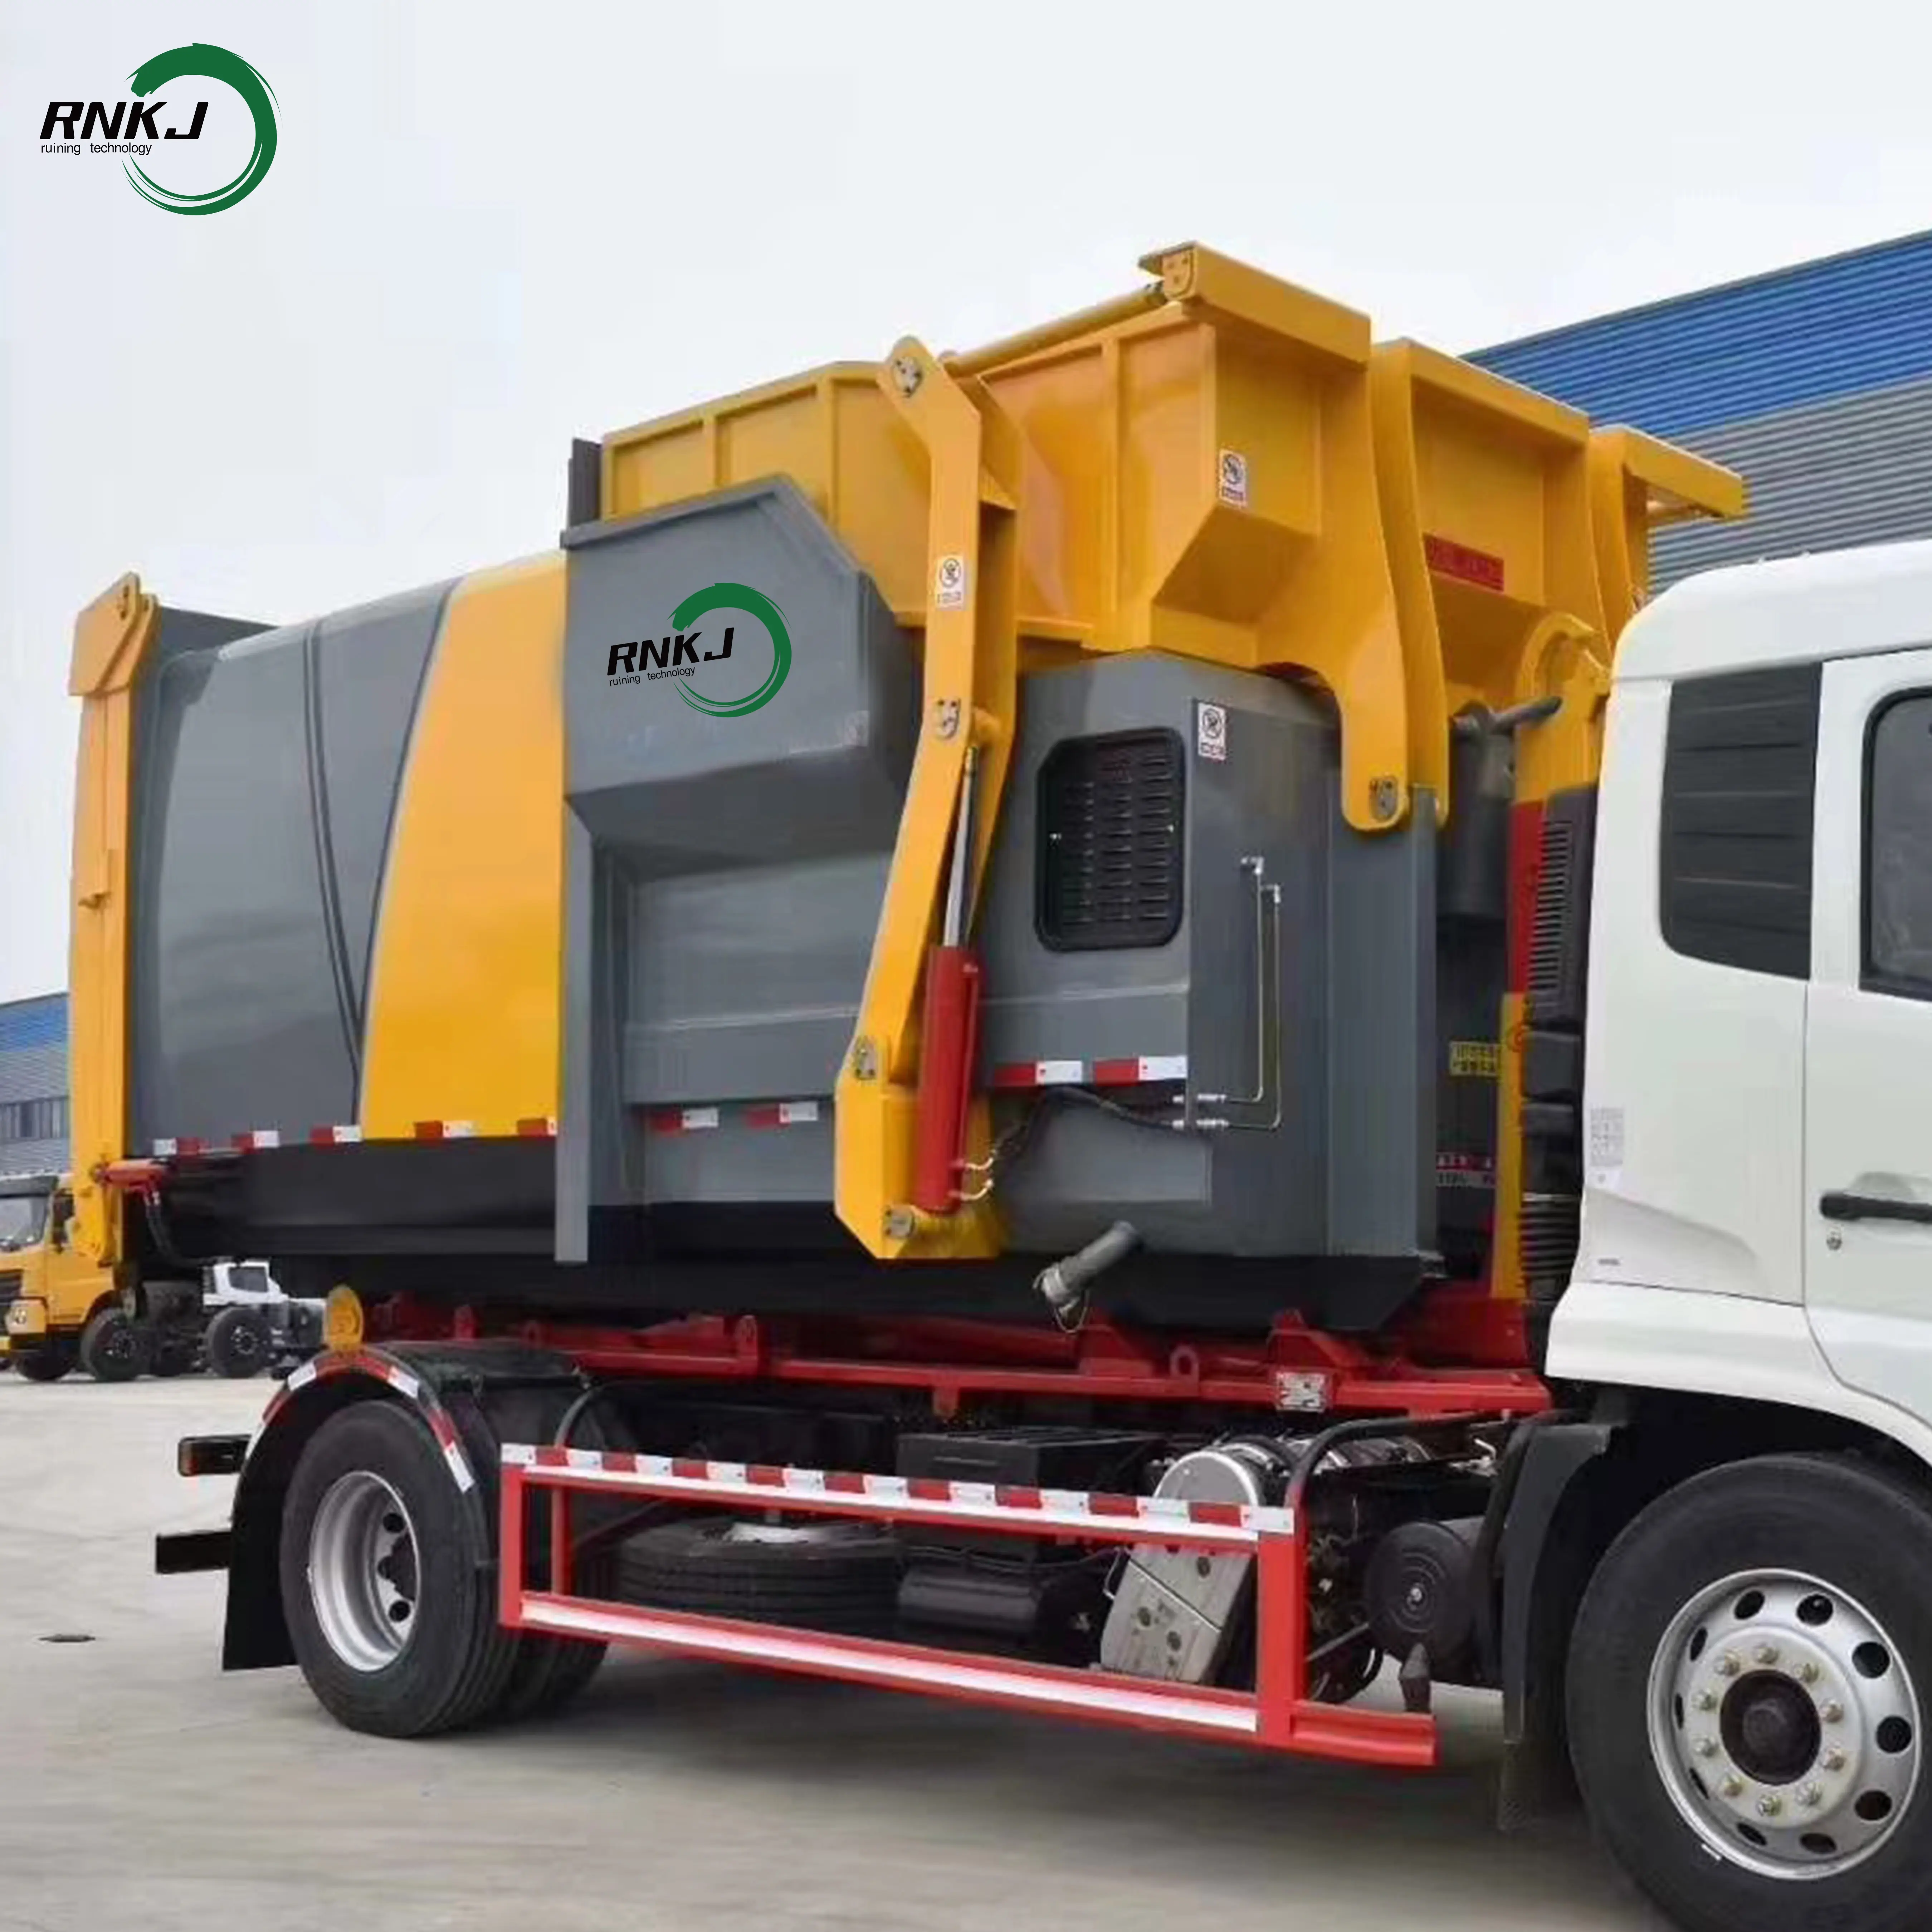 Le haut camion à ordures comprimé environnemental efficace de RNKJ avec des ordures de système d'opération